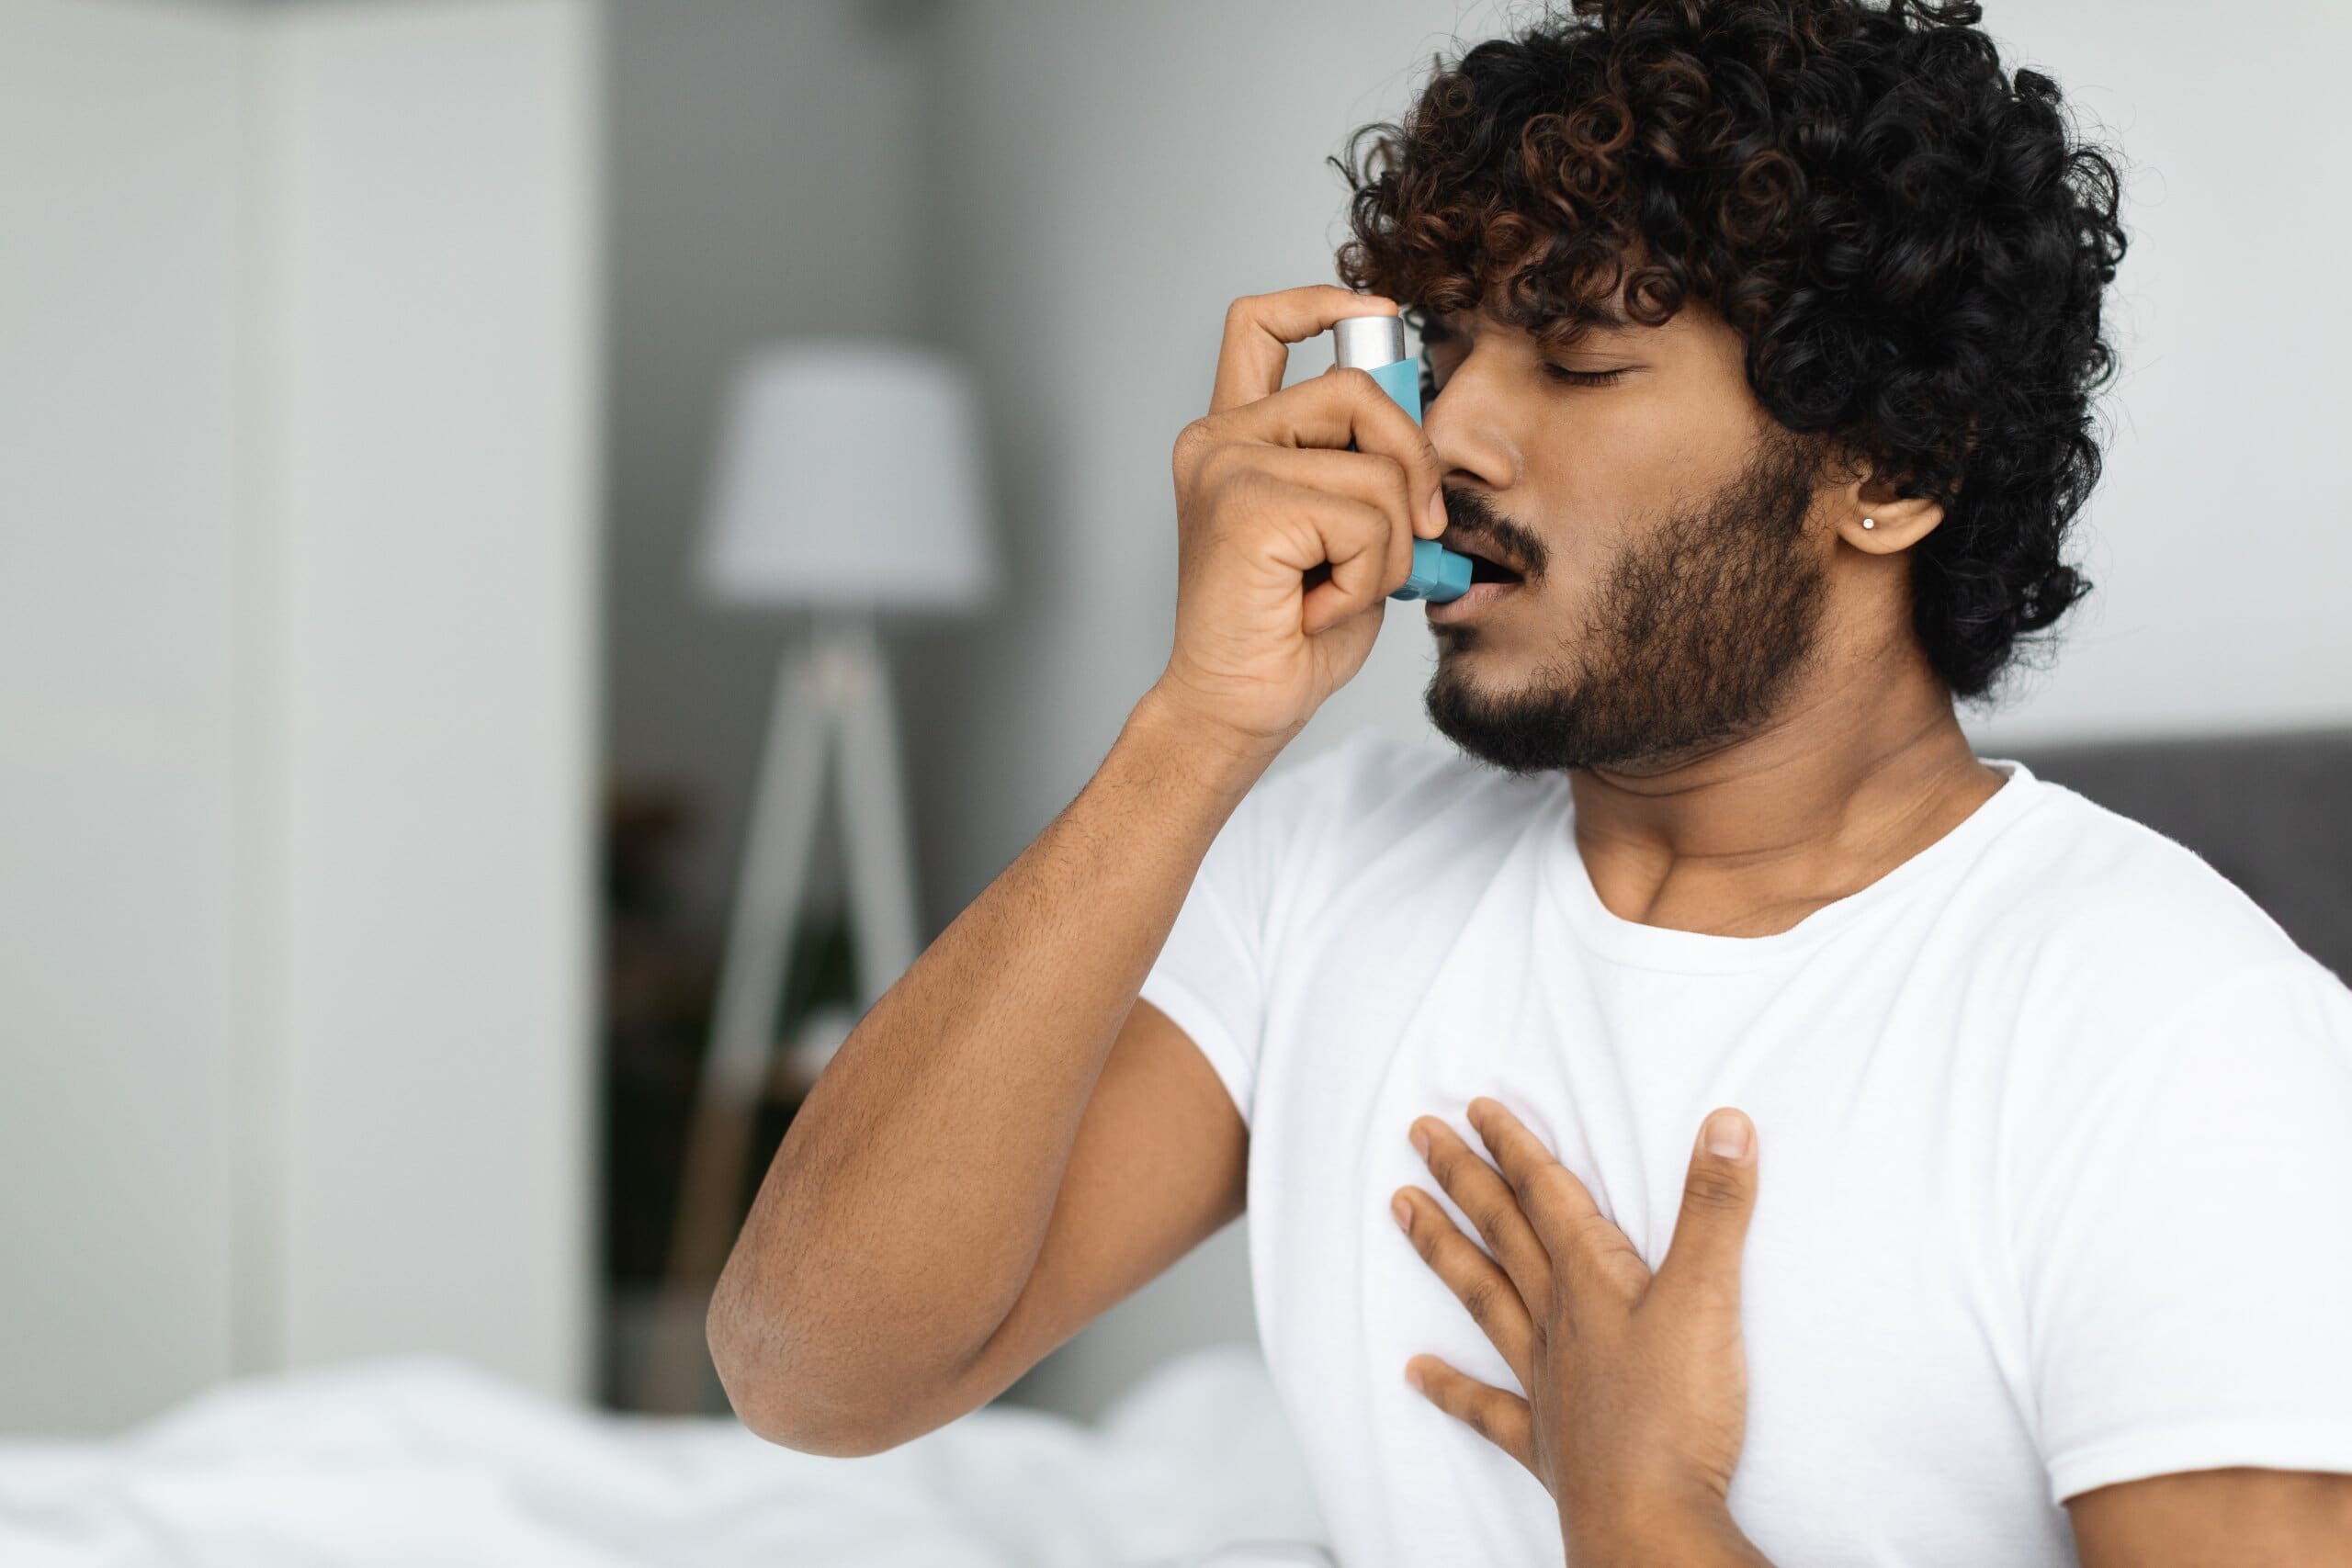 Man with asthma using an inhaler.